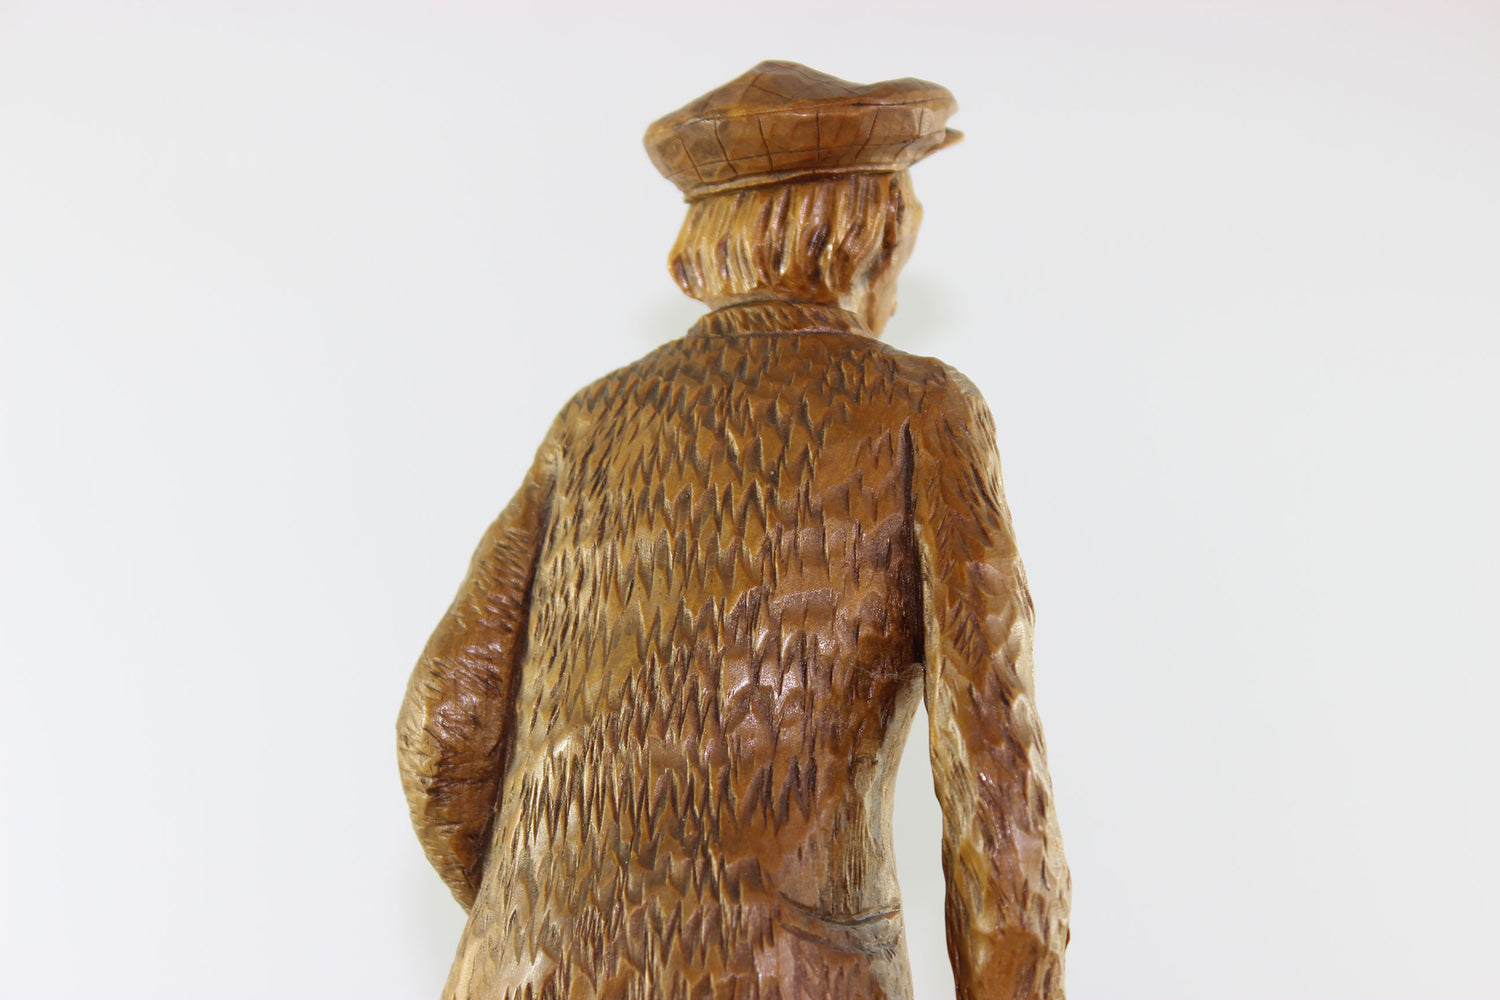 Gaetan Hovington, Wood Sculpture, Elderly Man